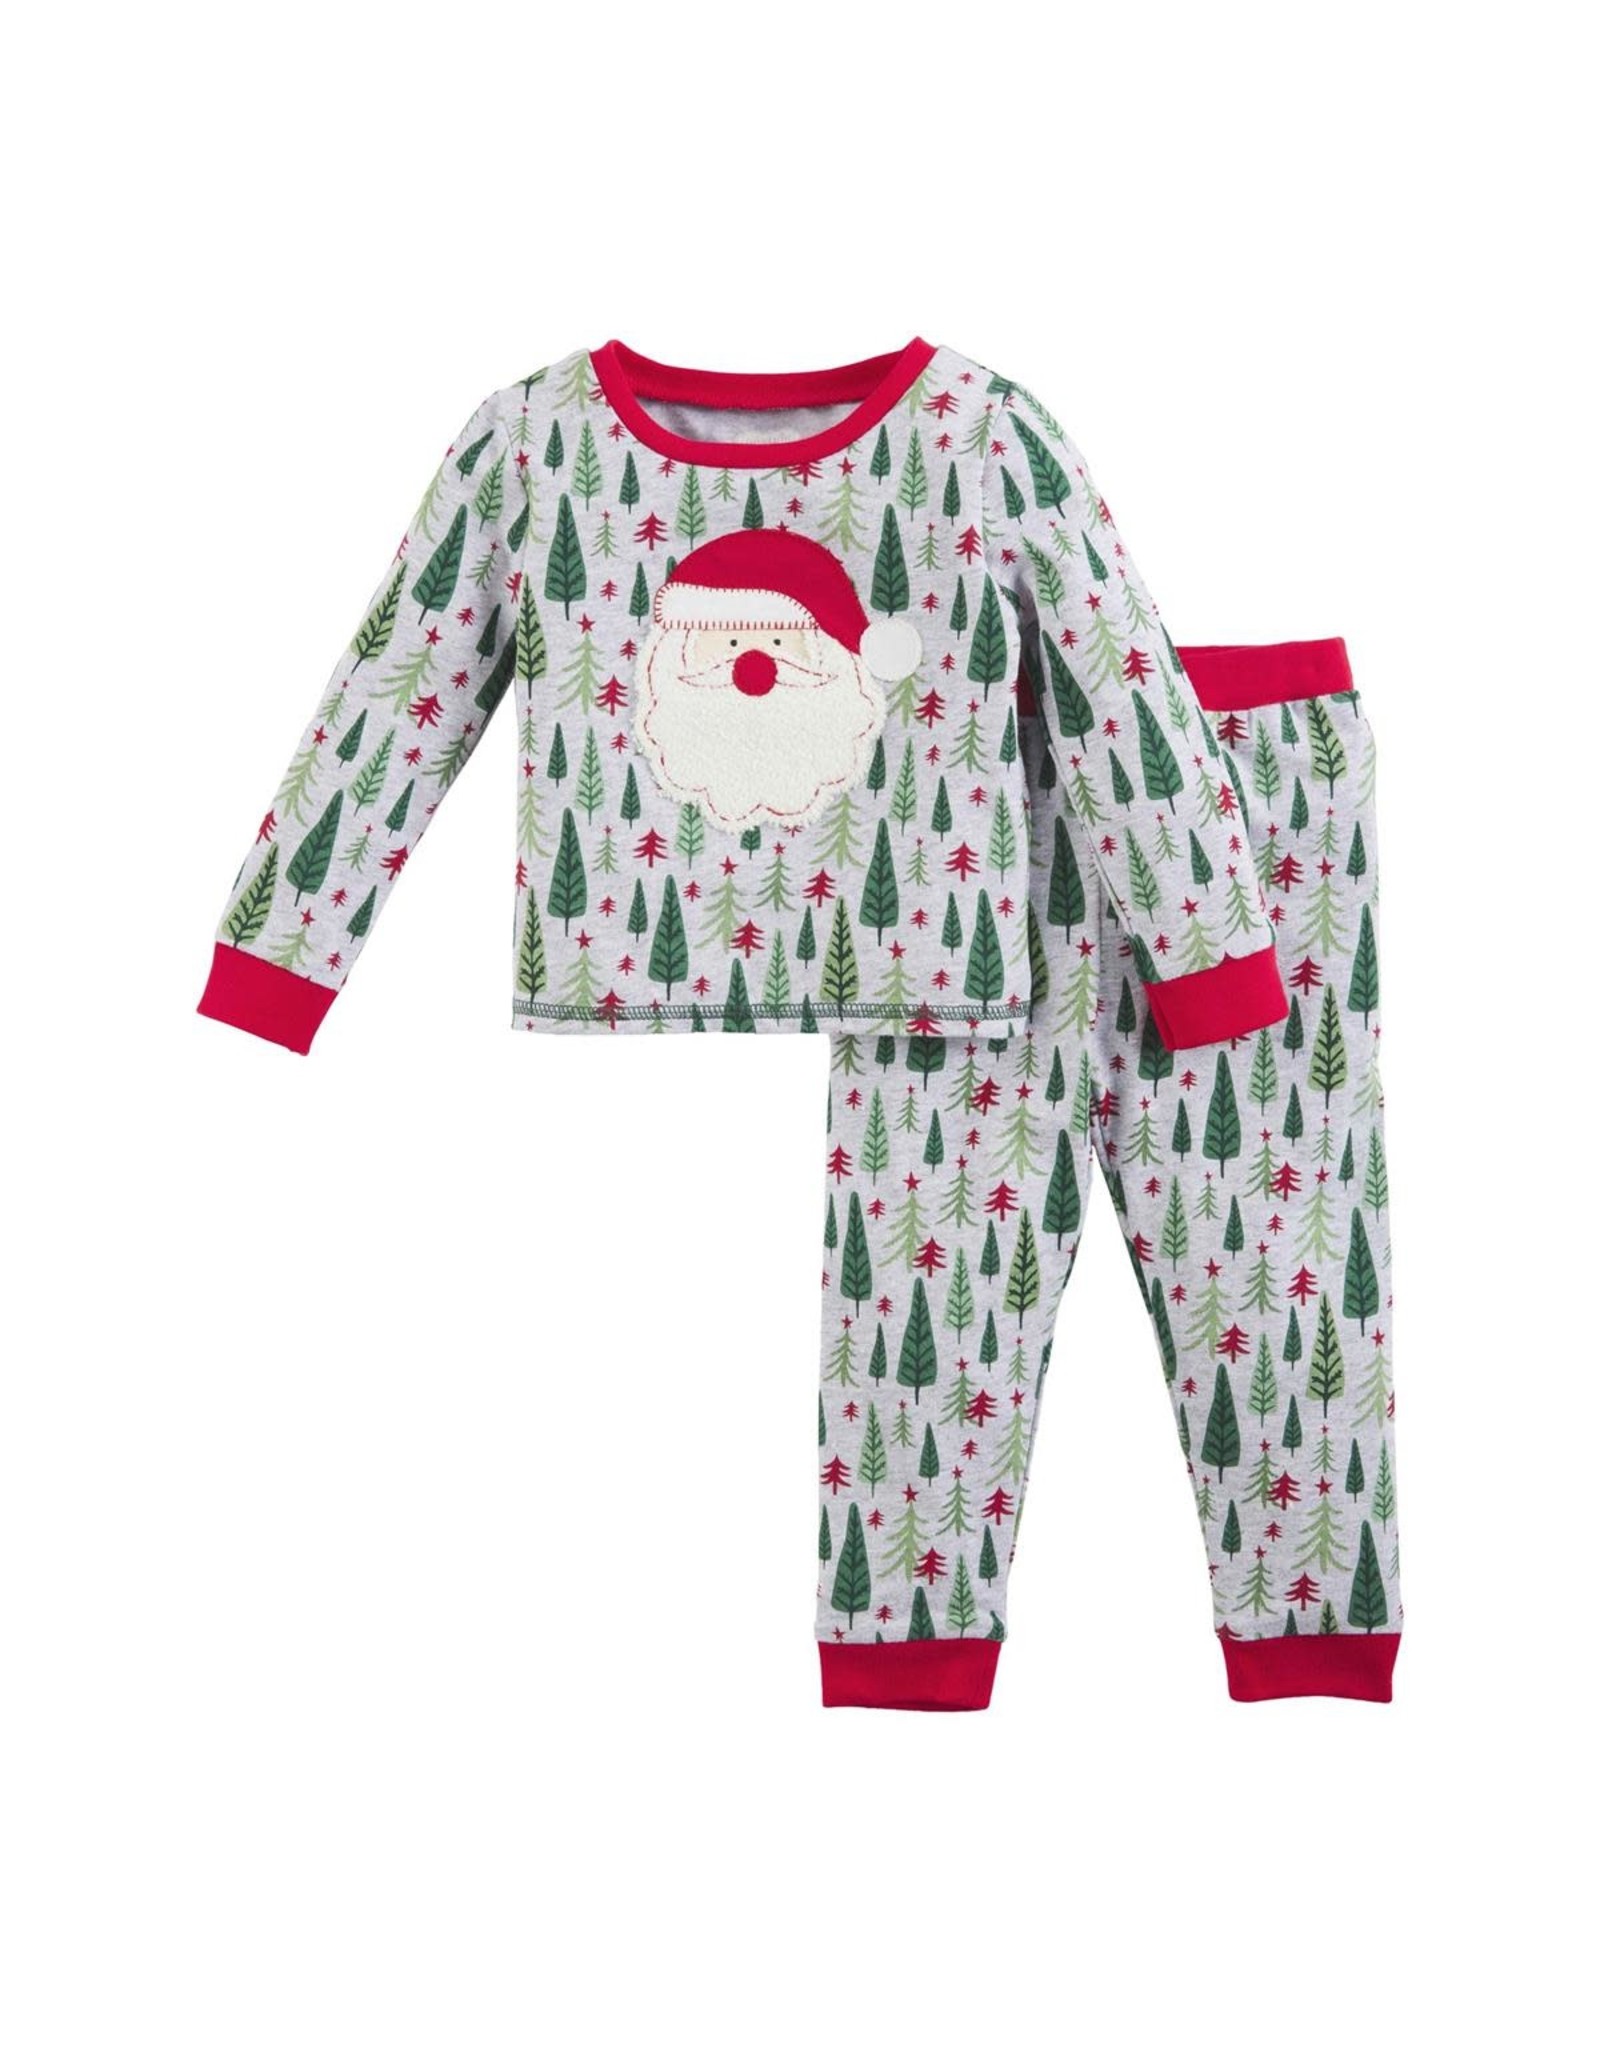 Mud Pie Christmas Sleepwear Family Pajamas 2pc Set Kids 4T